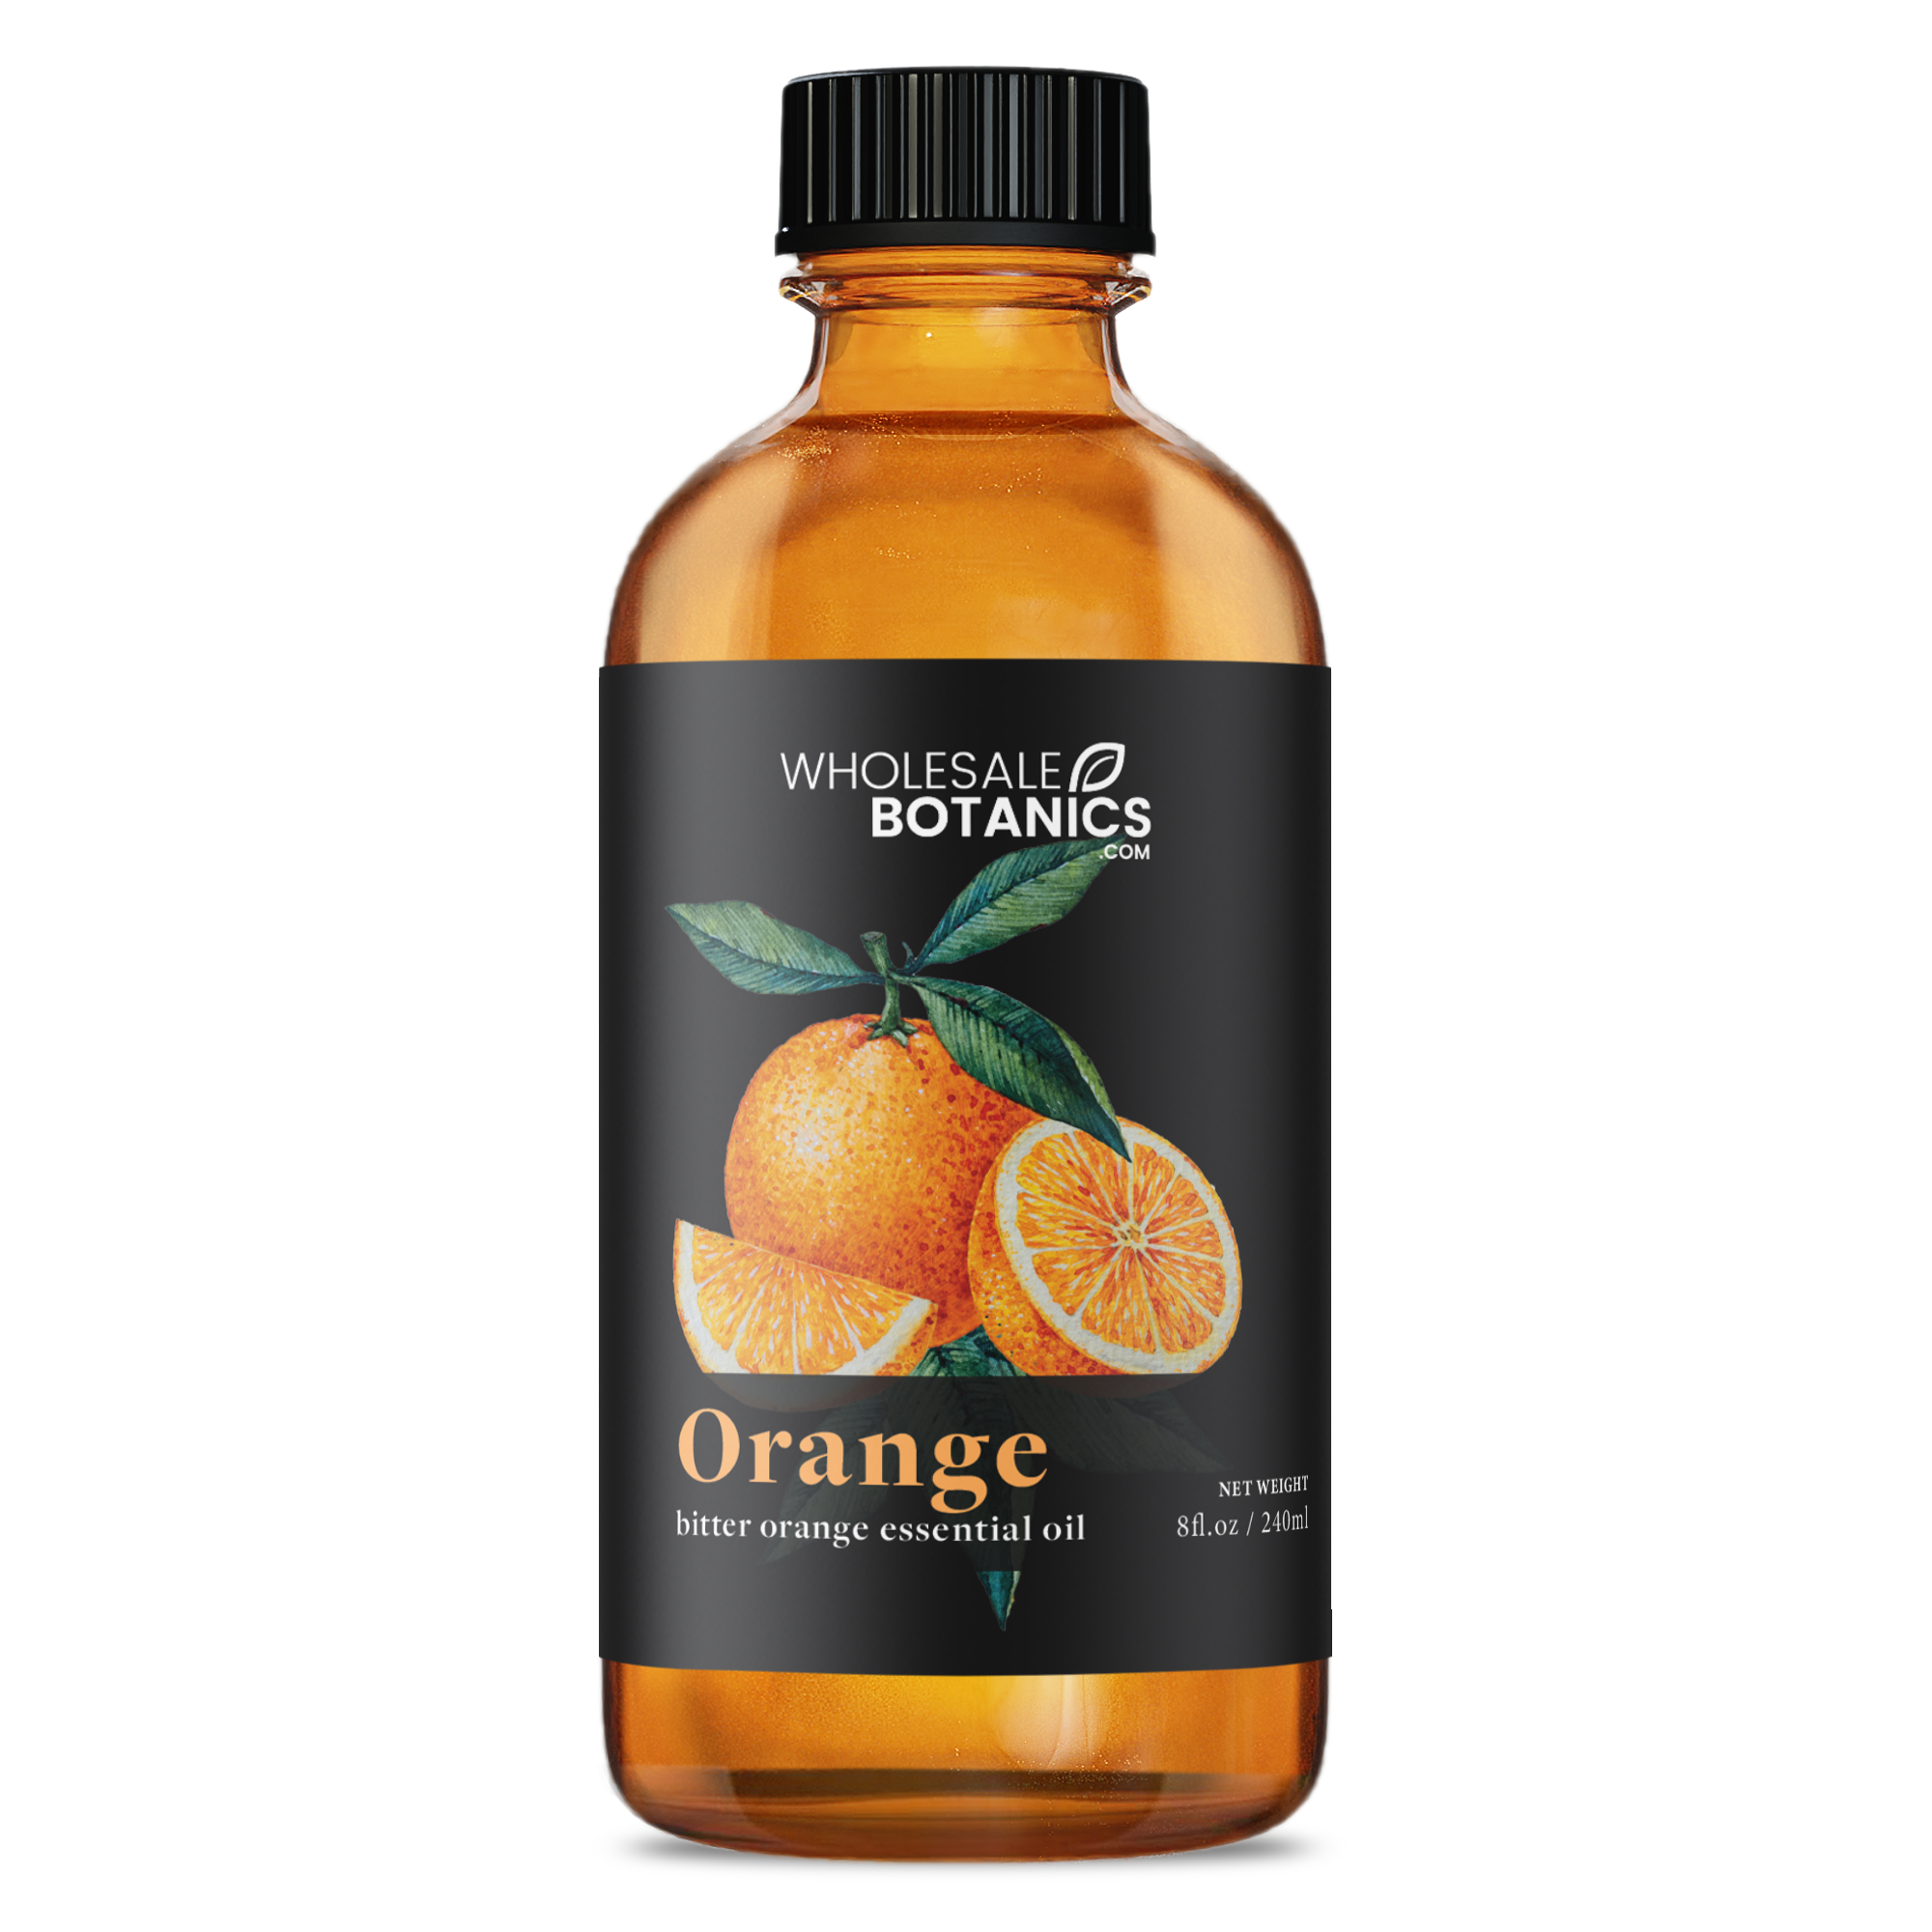 Bitter Orange Essential Oil